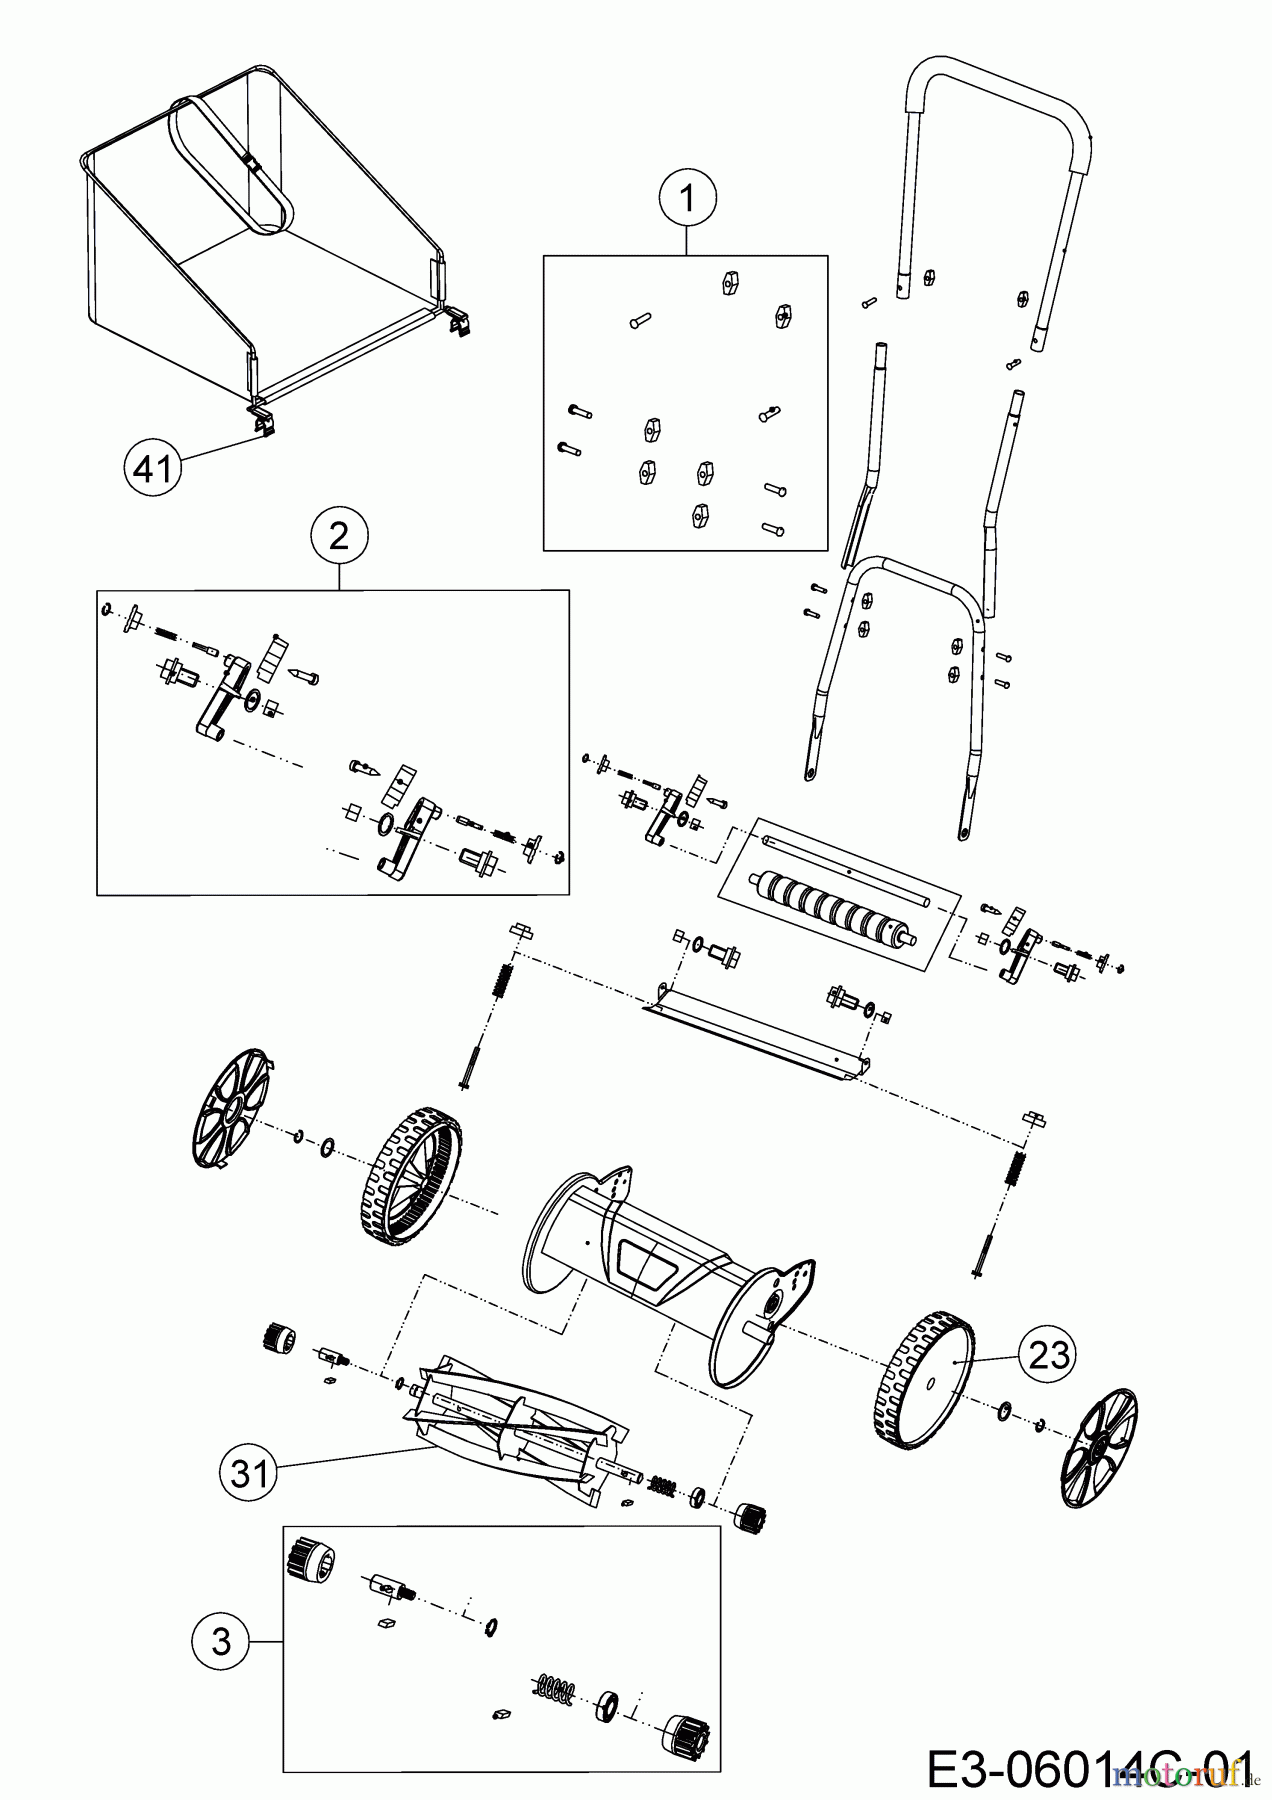  Wolf-Garten Spindle mower TT 350 S 15B-BA--650  (2018) Basic machine